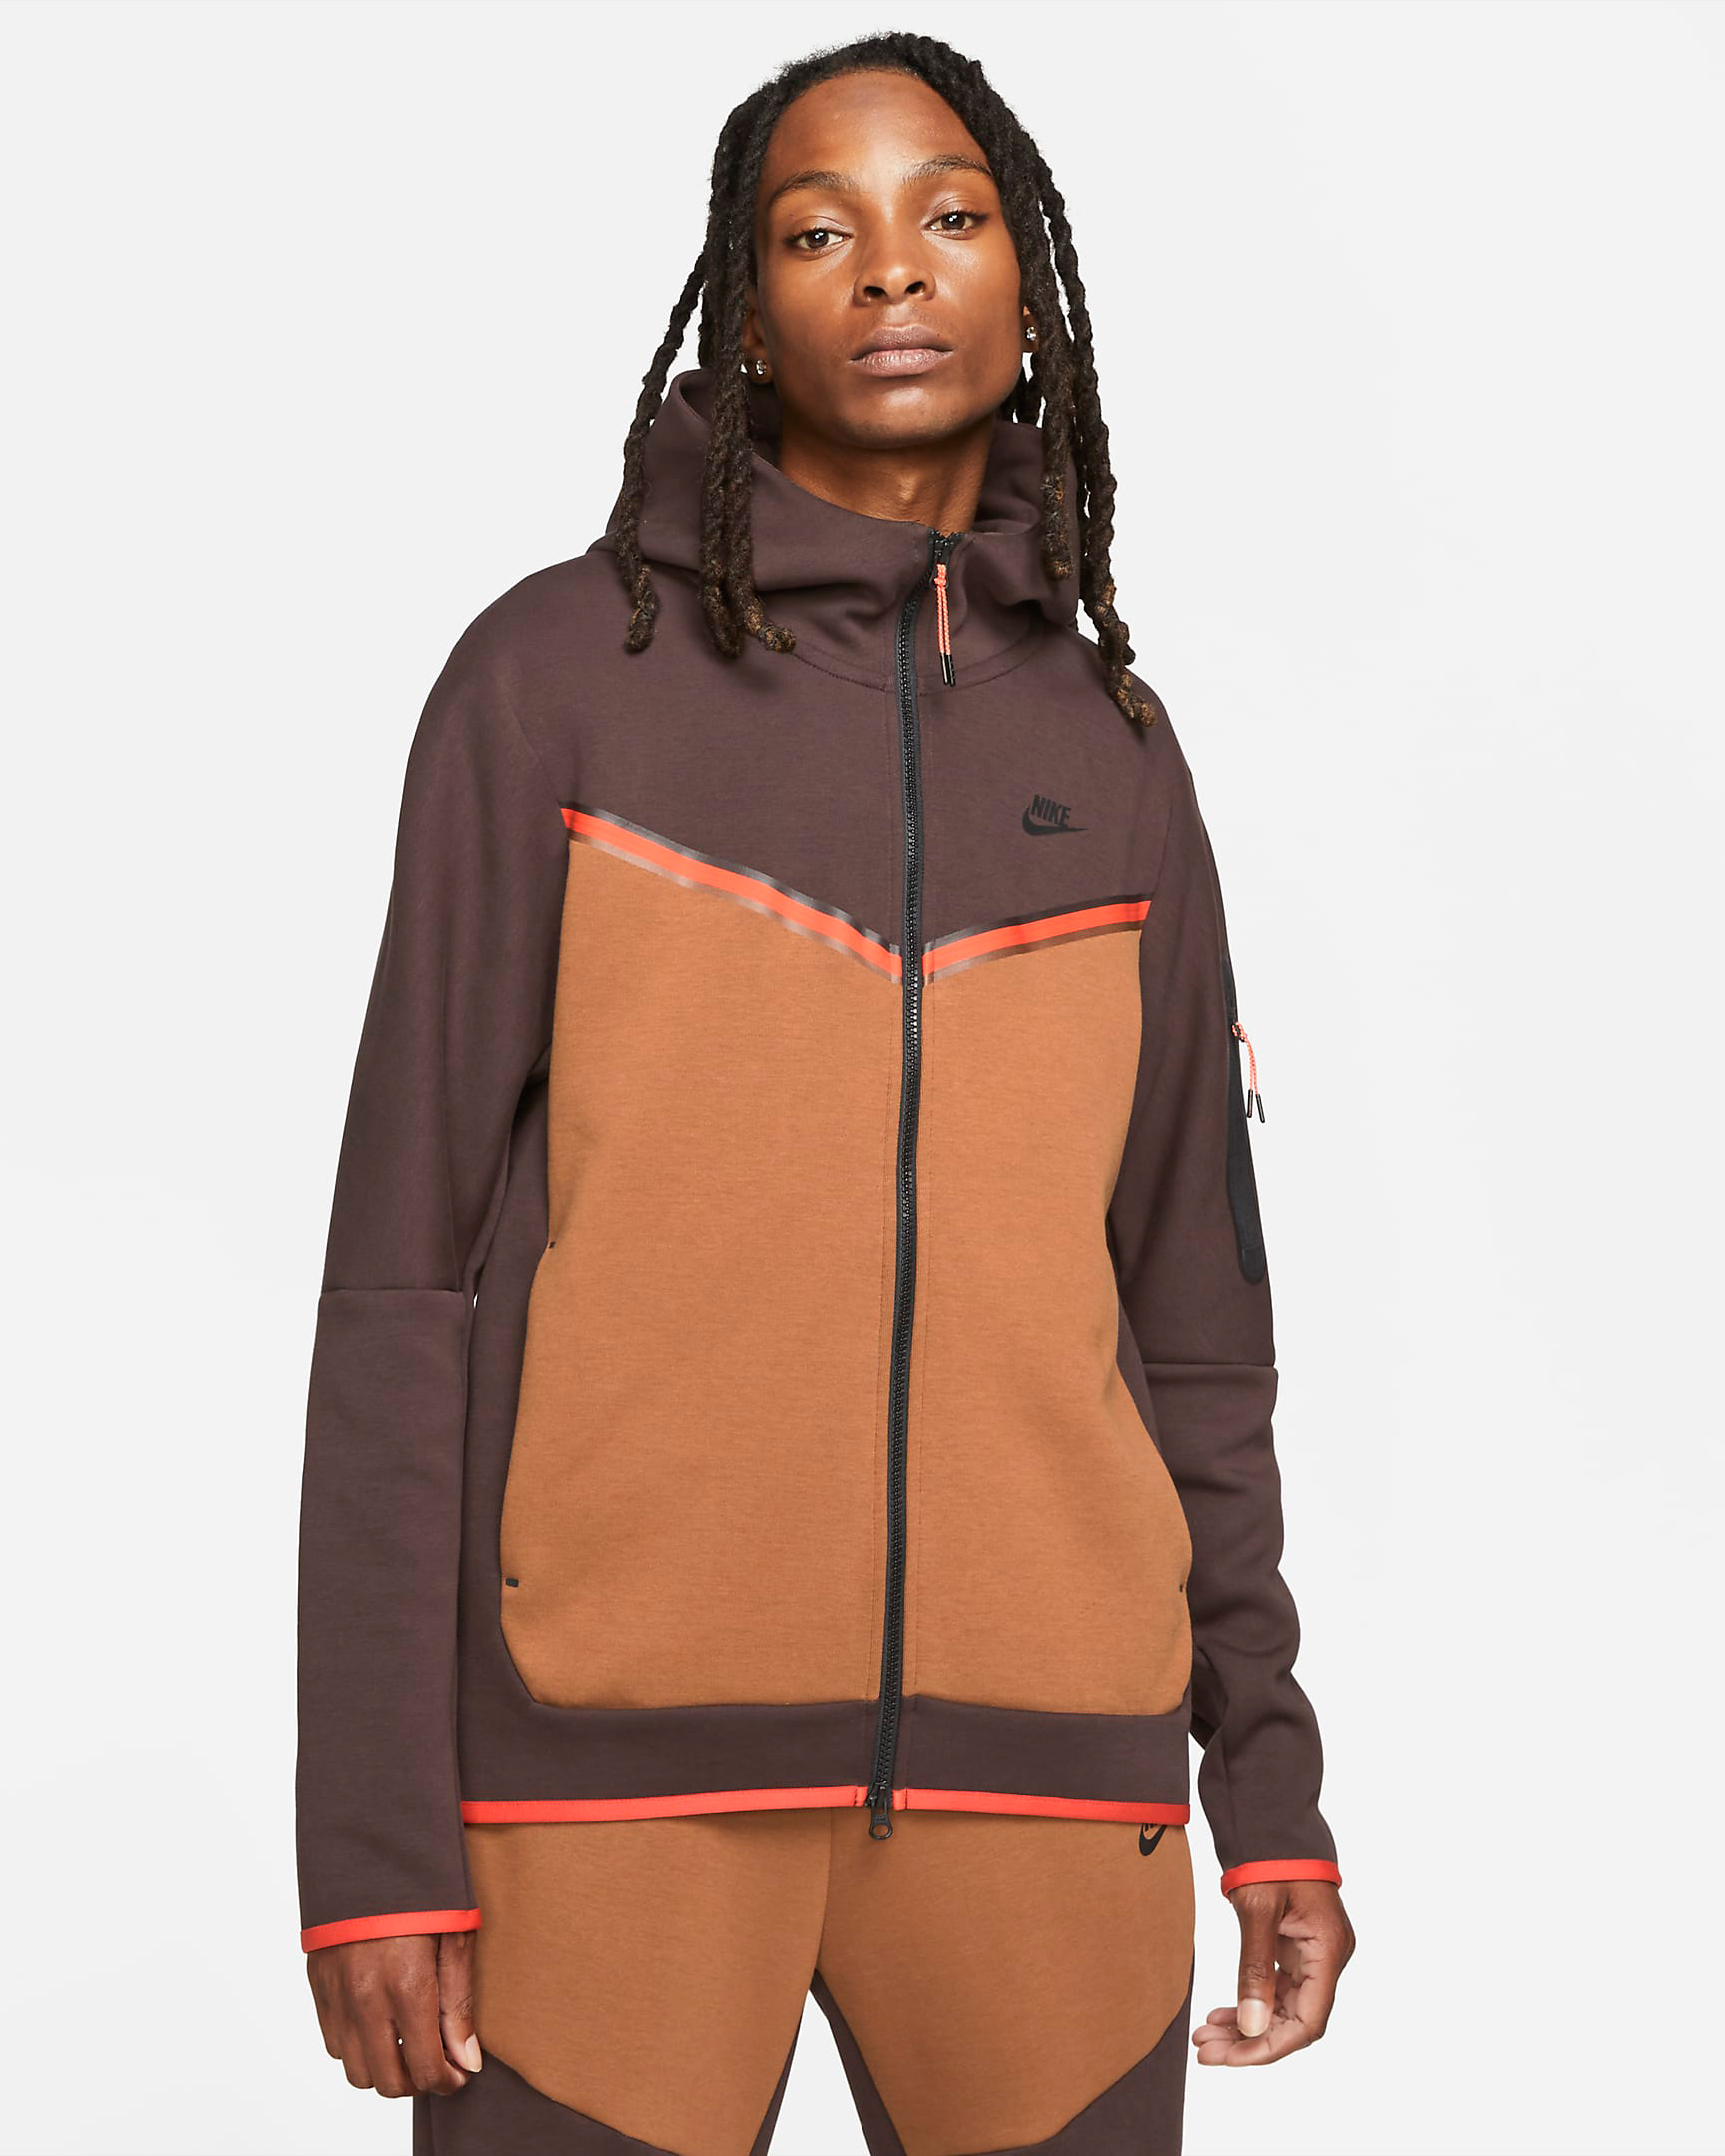 nike-tech-fleece-hoodie-brown-basalt-pecan-chile-red-black-1